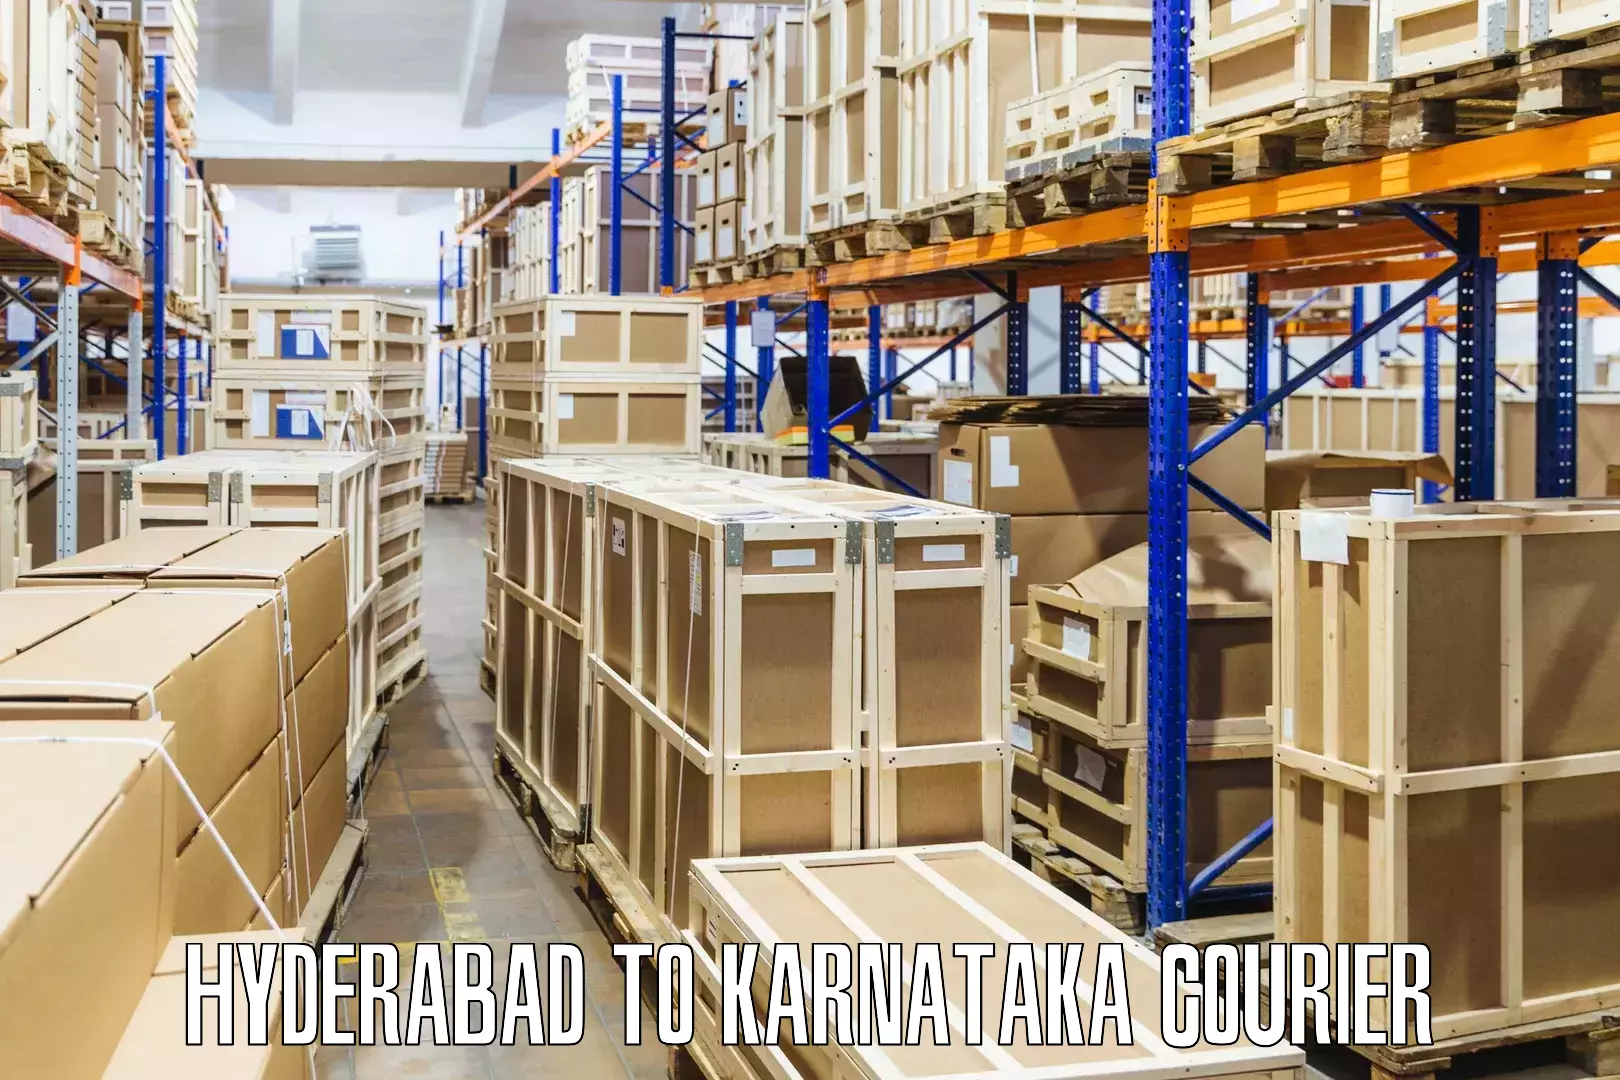 Shipping and handling Hyderabad to Karnataka